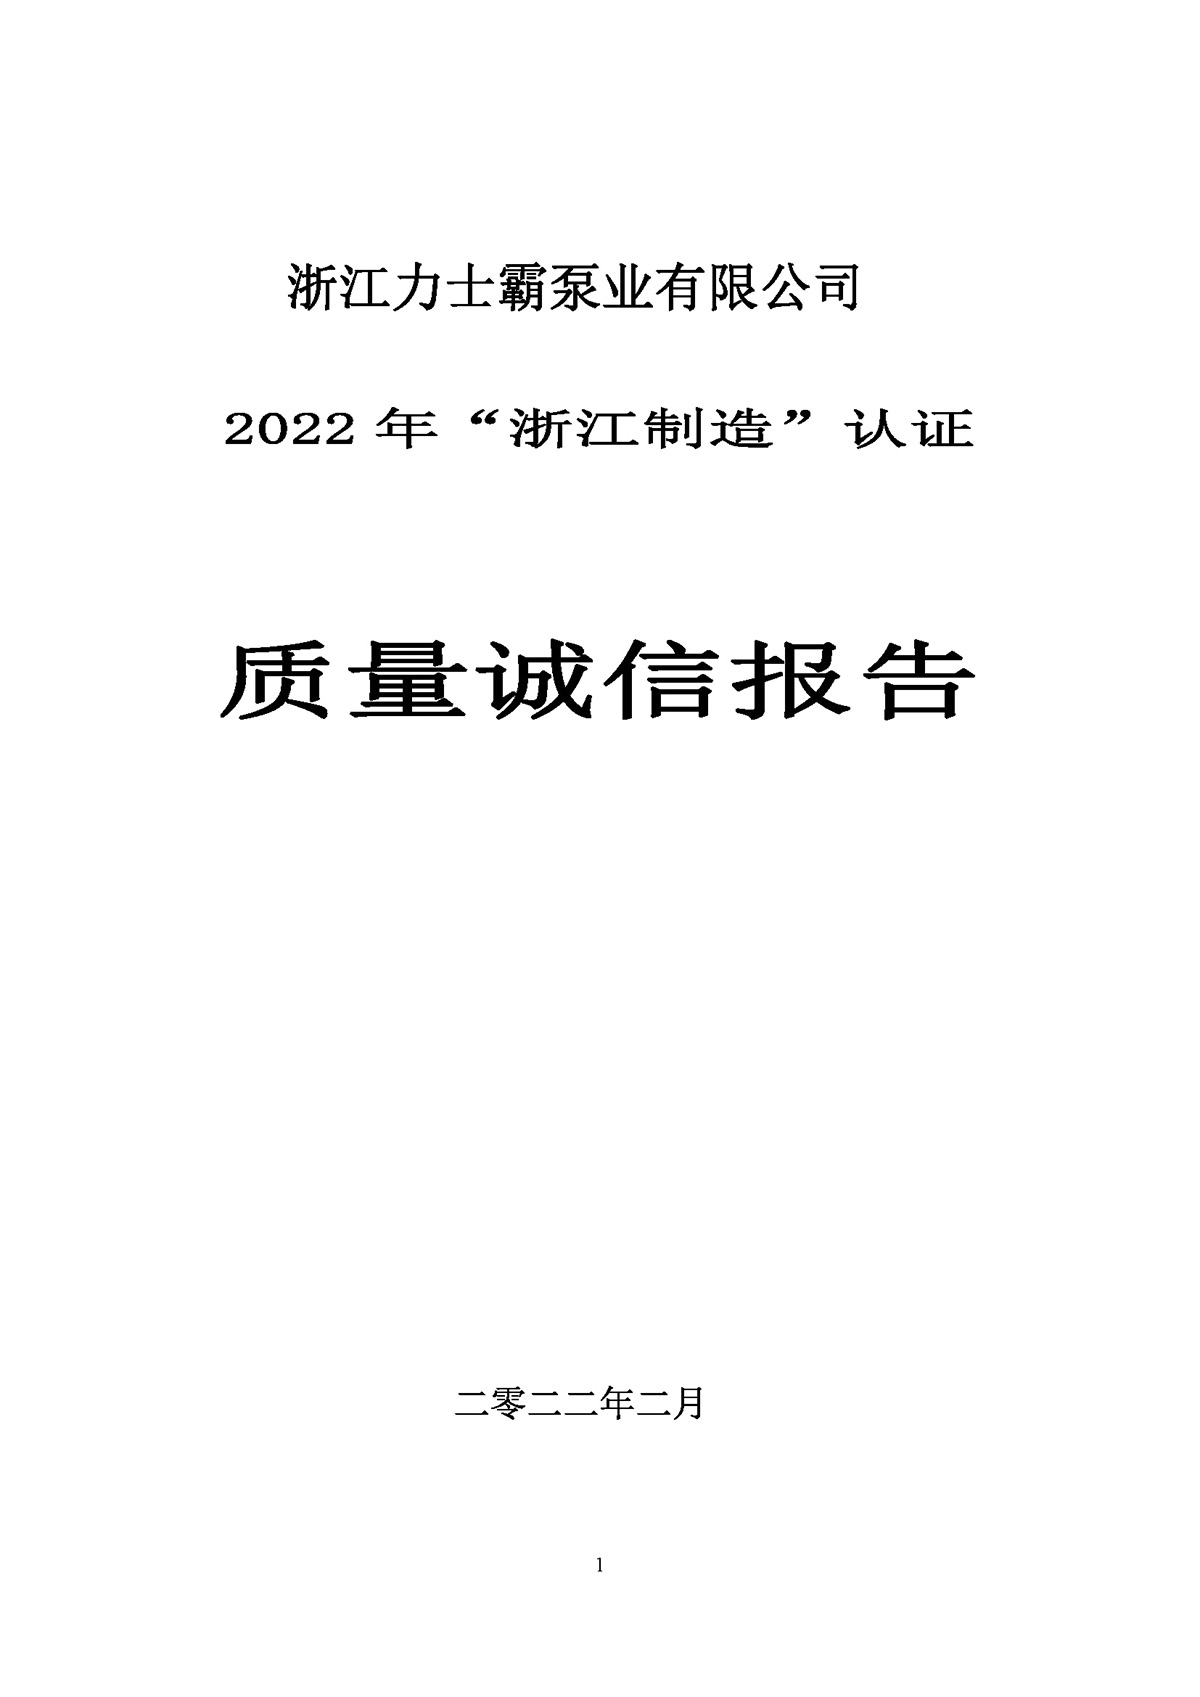 尊龙凯时泵业质量诚信报告(图1)